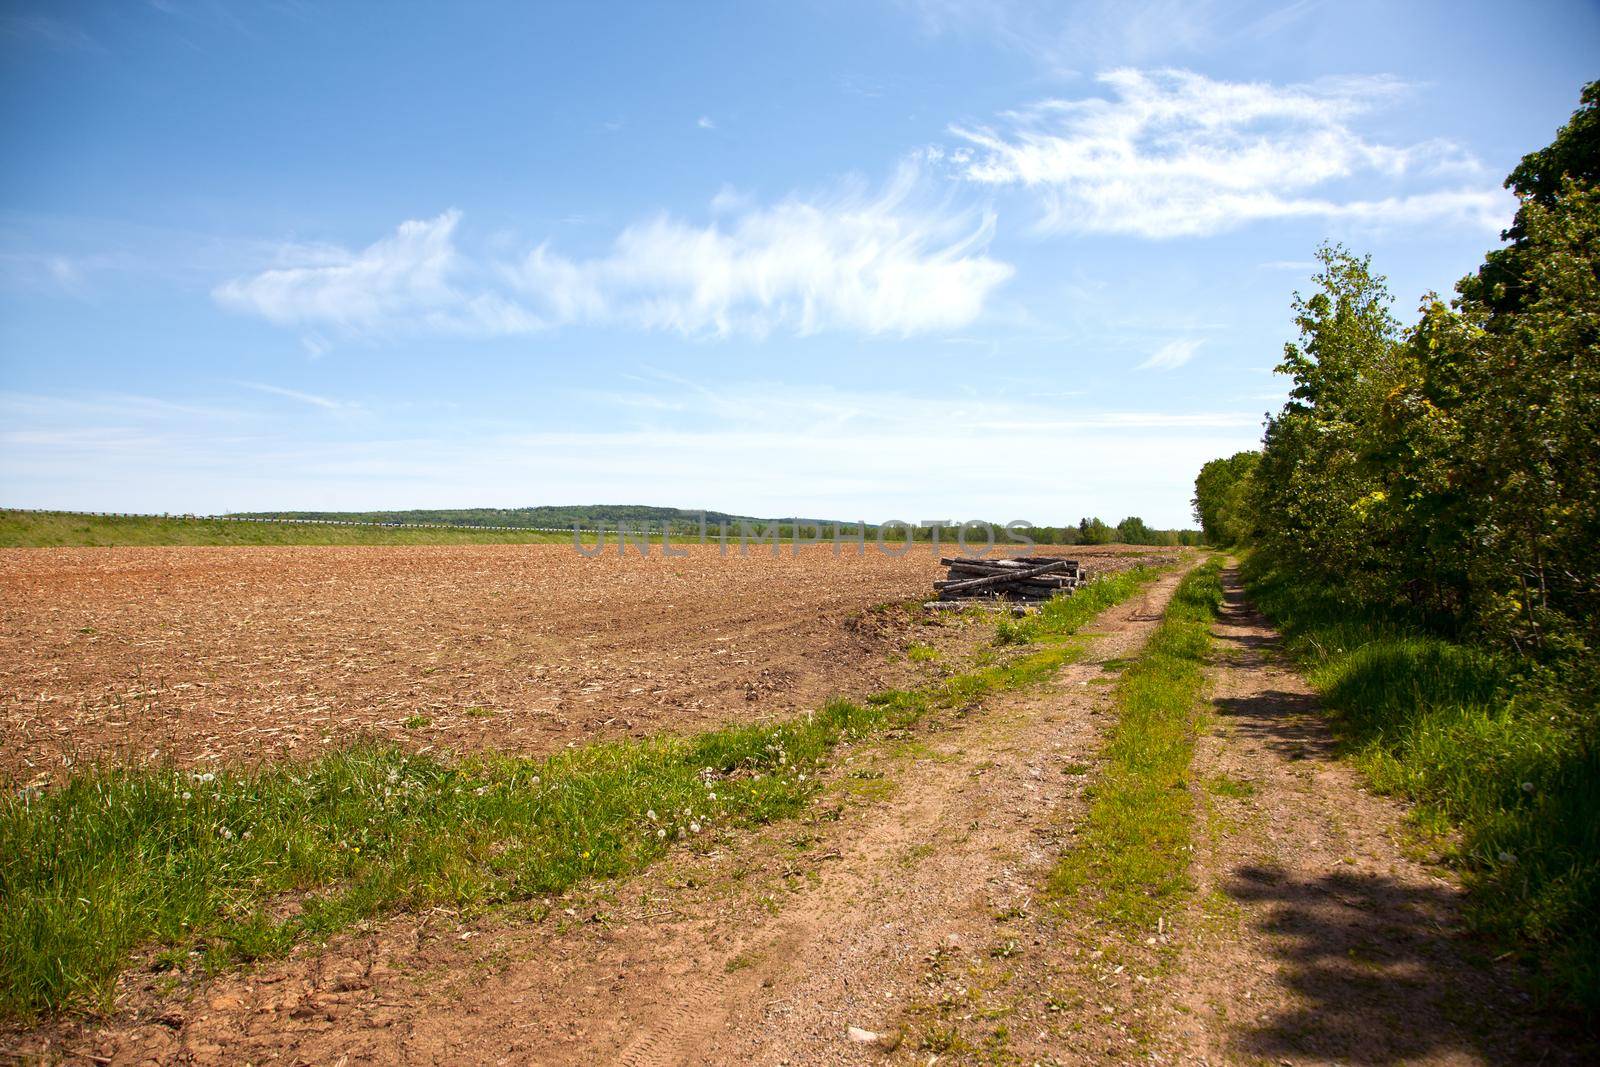 Dirt road in field  by rustycanuck